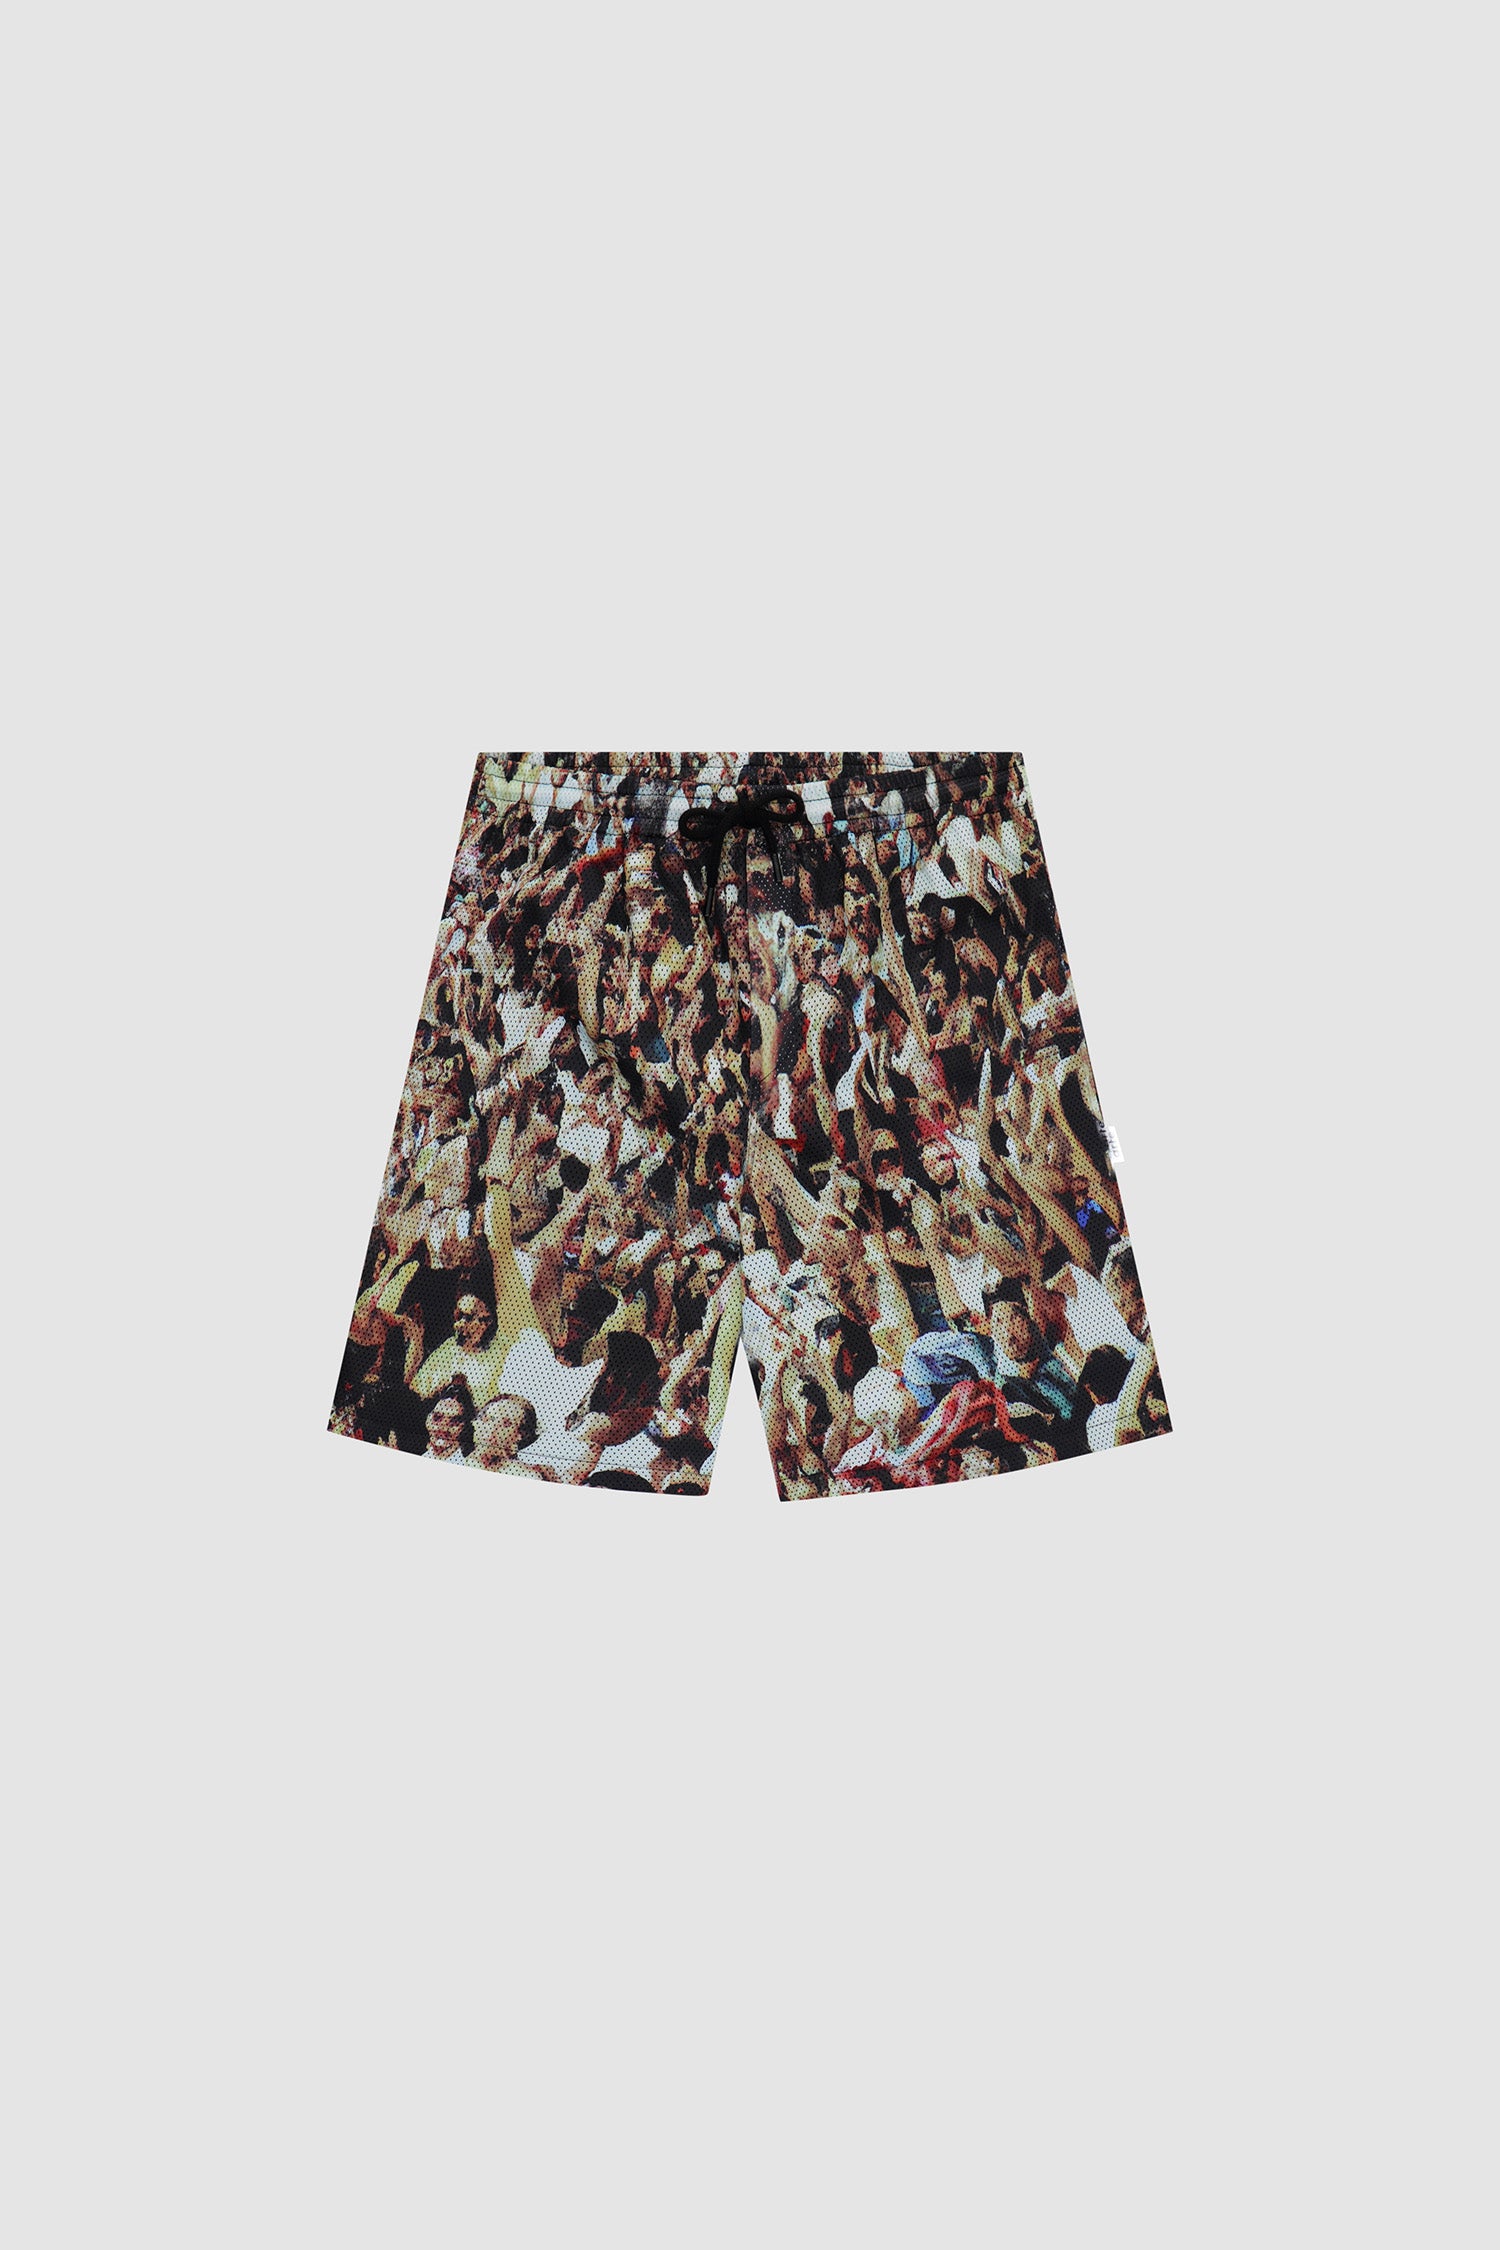 Scottie Mesh Shorts - Allover Print